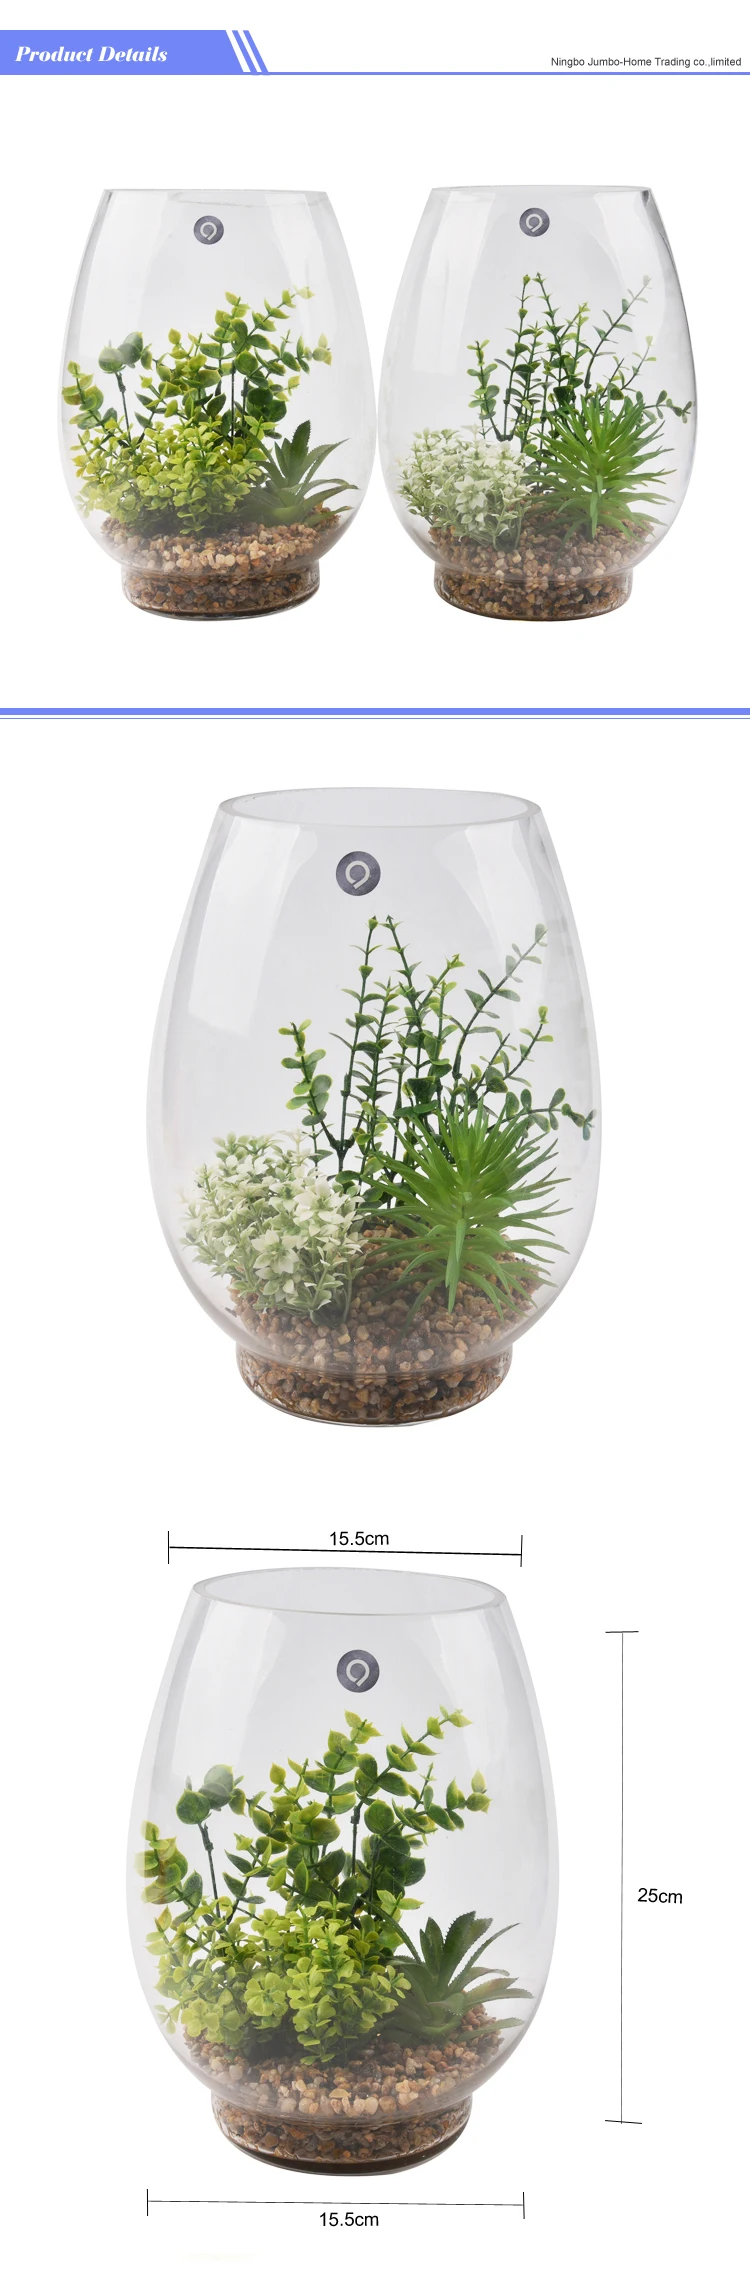 仿真透明玻璃圆仙人掌植物 terrarium 人造肉质植物水盆栽